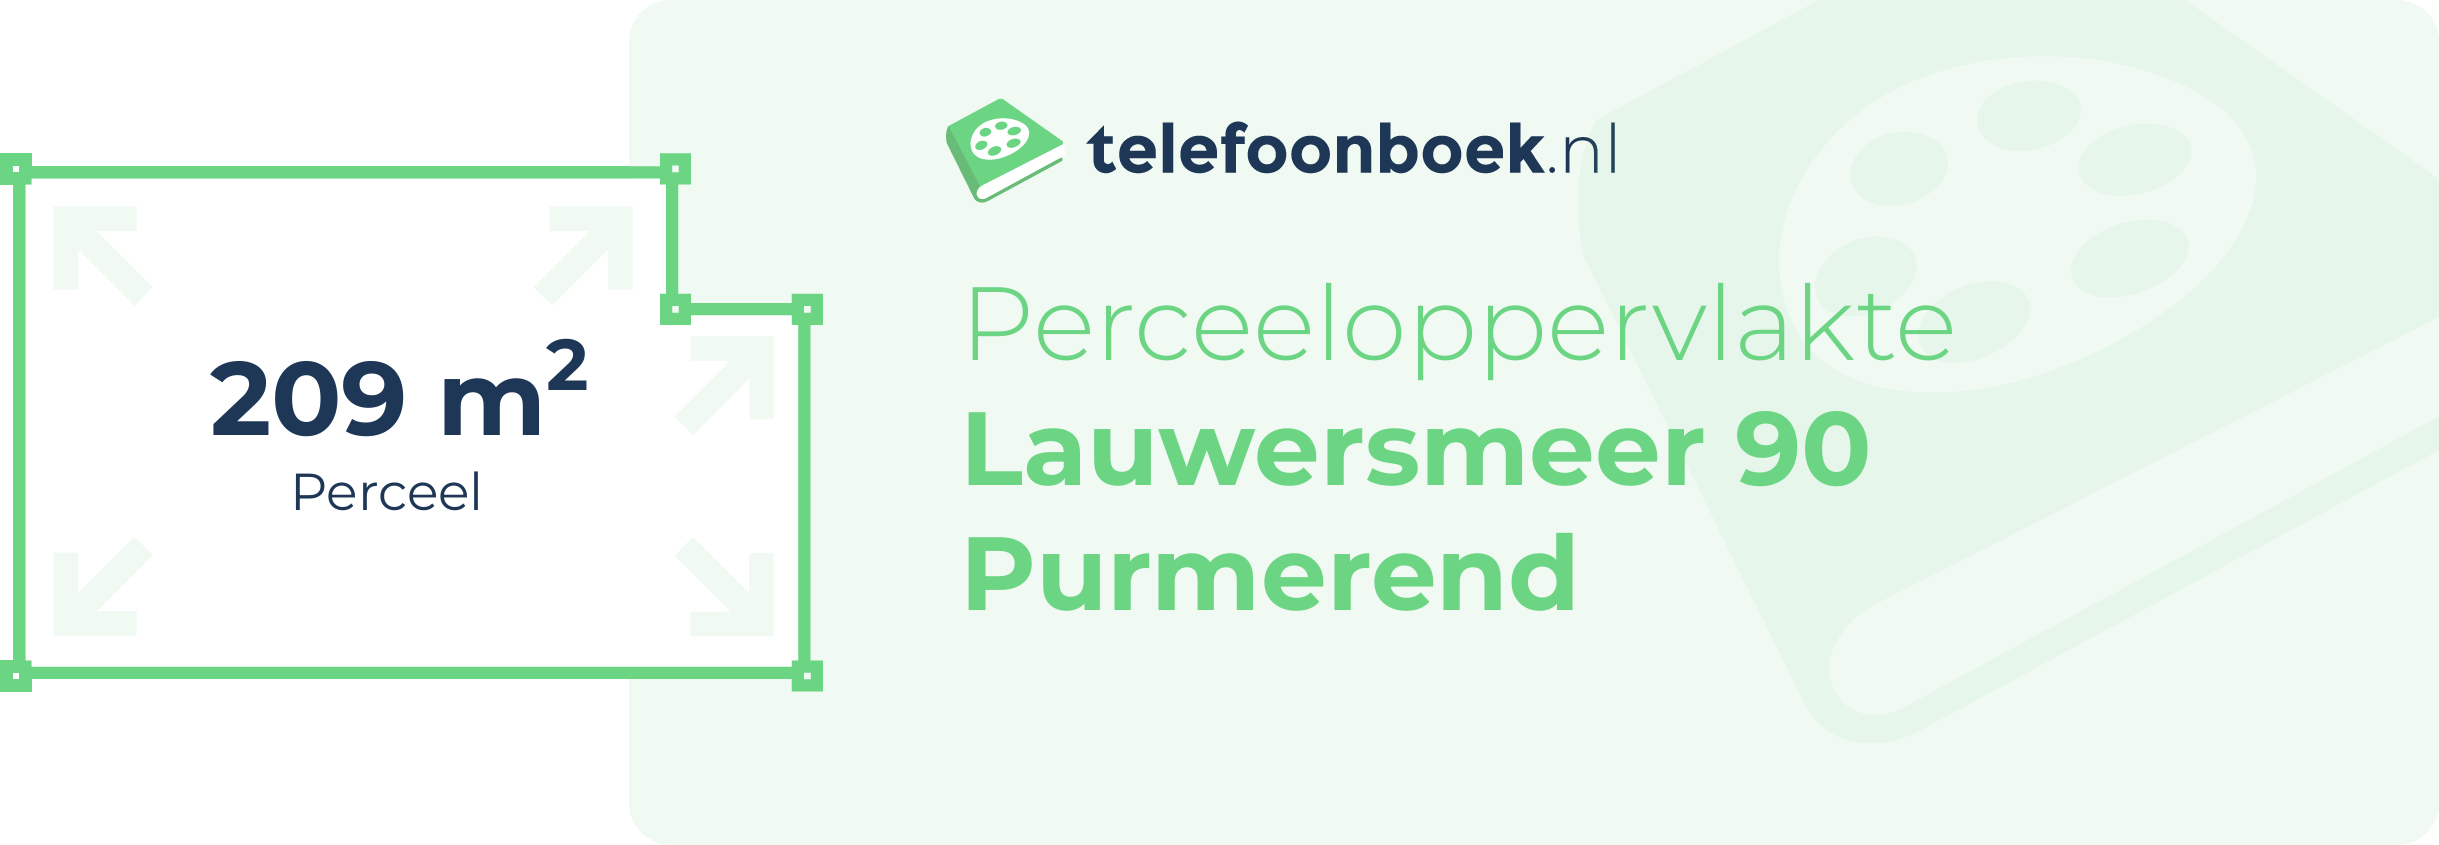 Perceeloppervlakte Lauwersmeer 90 Purmerend